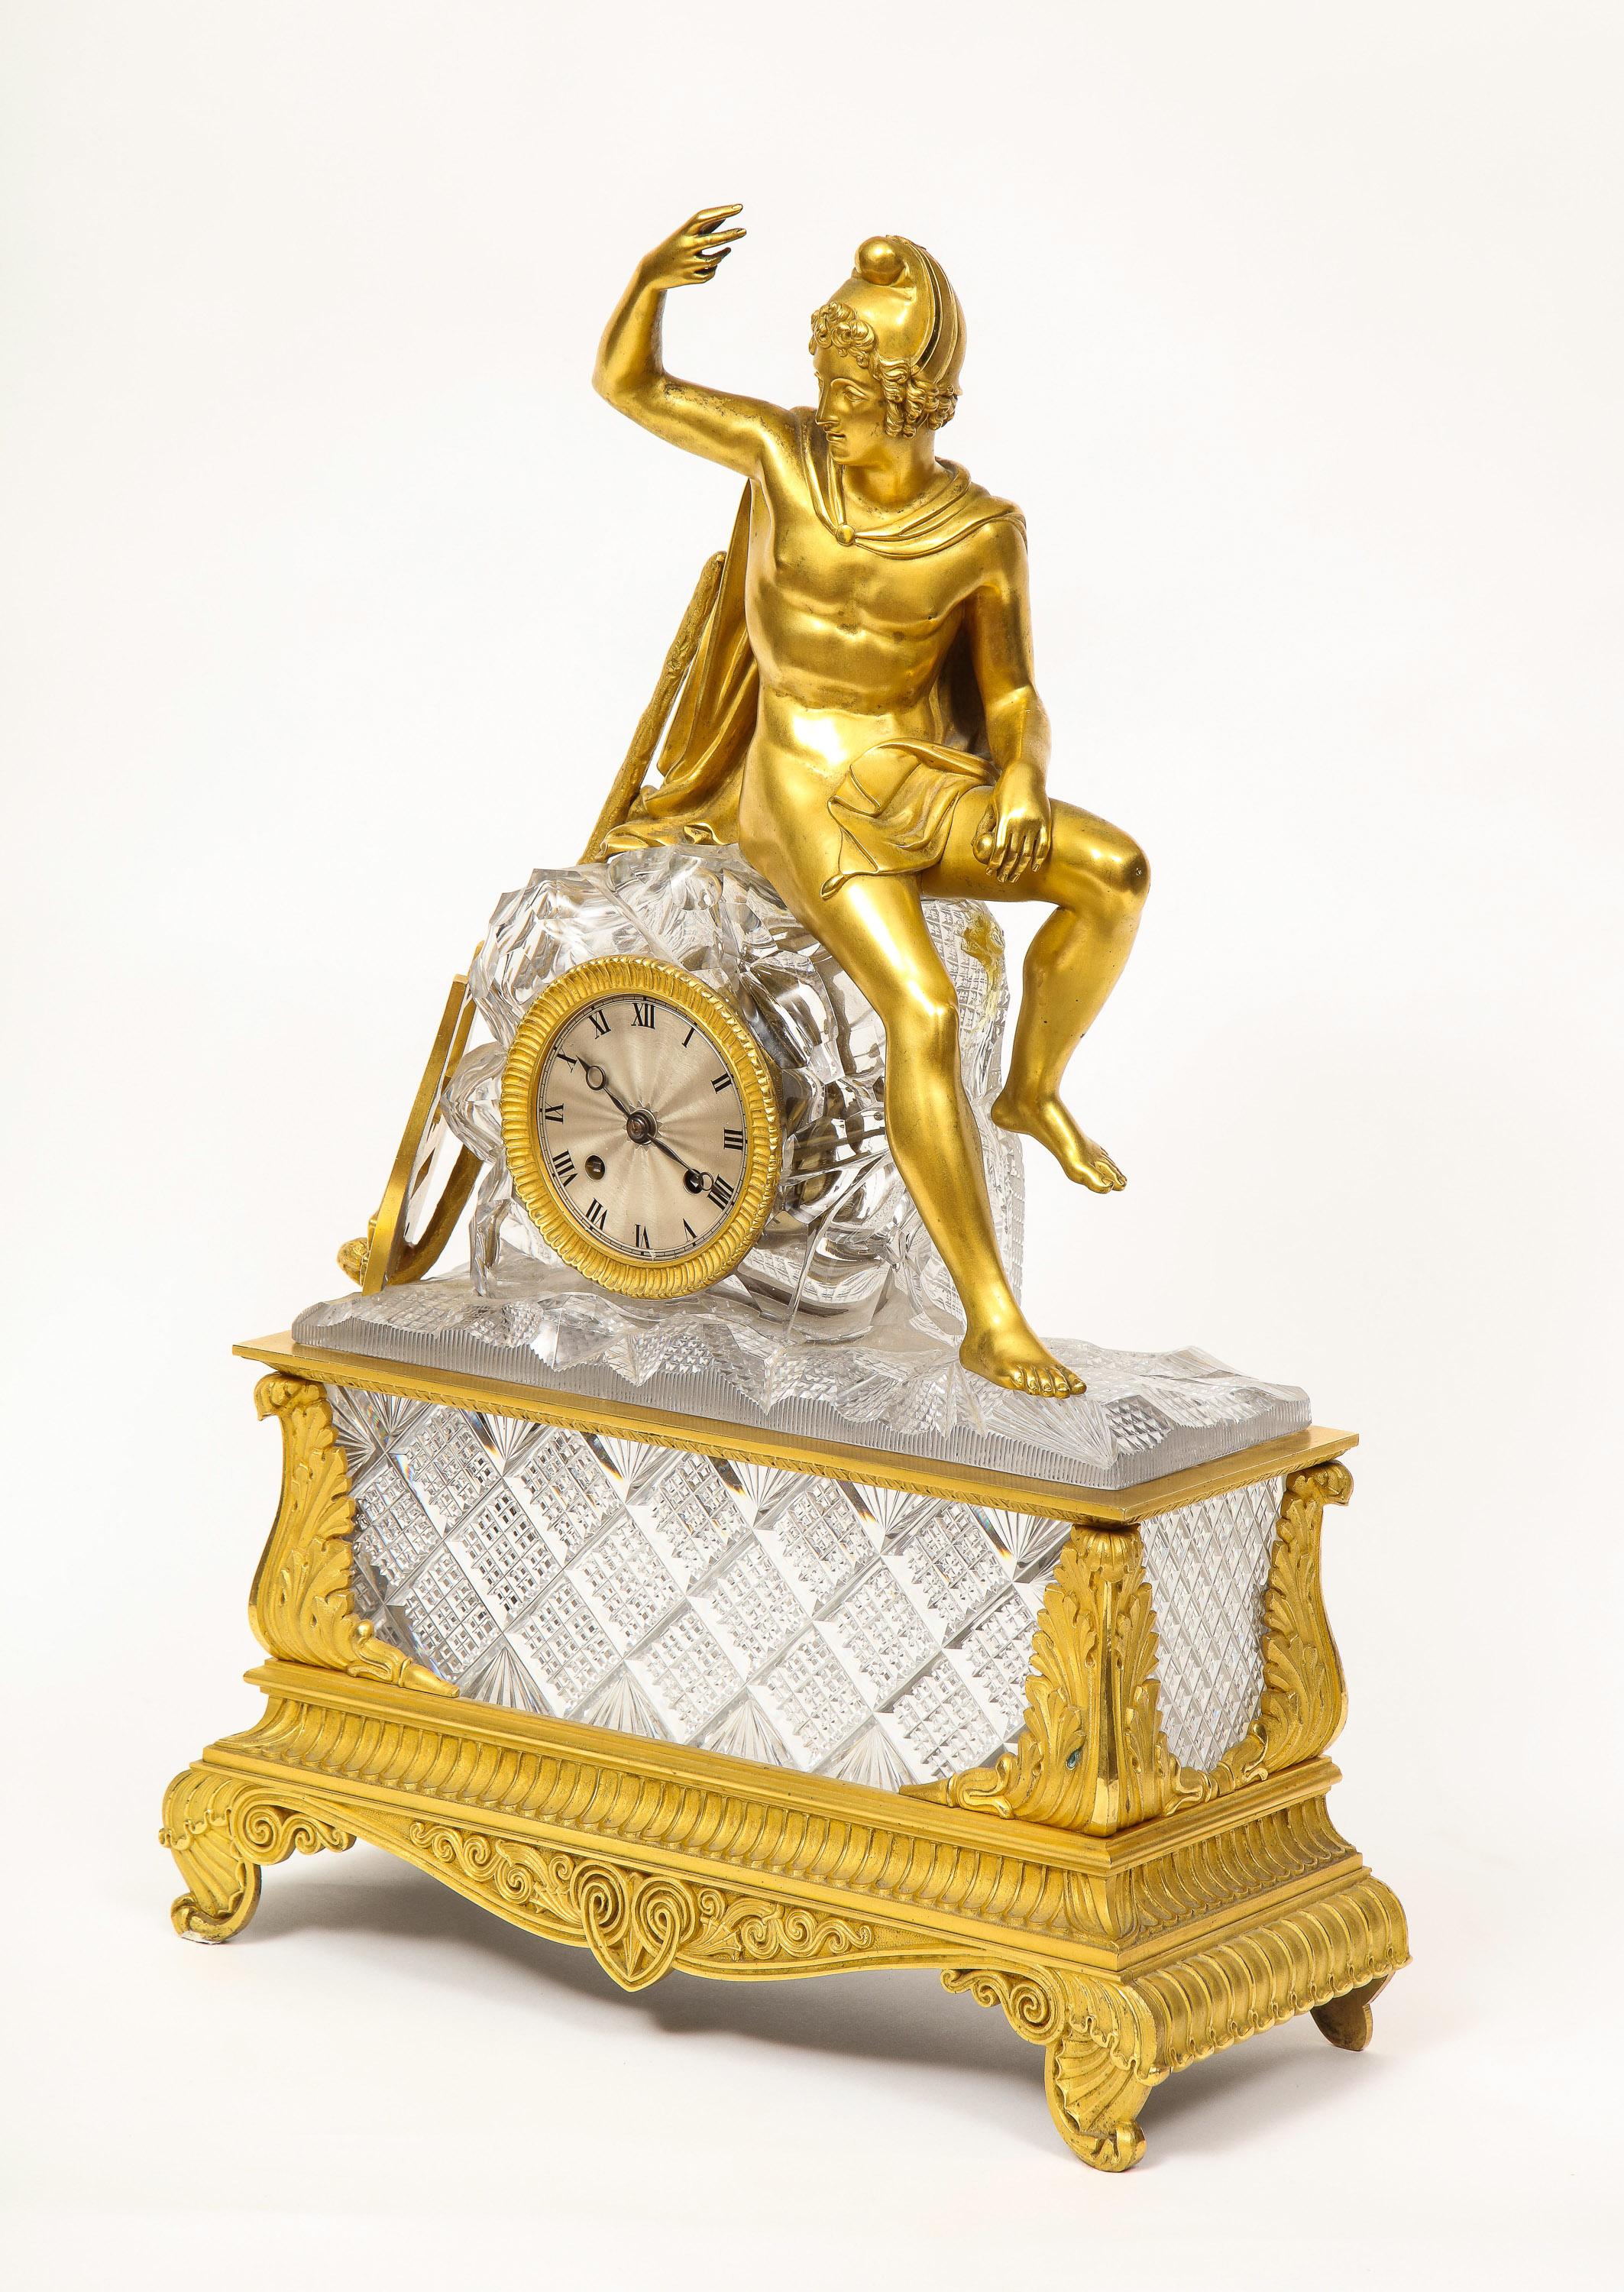 Exquise pendule Empire française en bronze doré et cristal taillé, C.I.C., attribuée à Baccarat.

Fabriquée à partir de bronze doré au mercure de la plus haute qualité, cette horloge représente une allégorie assise sur un rocher, entourée de